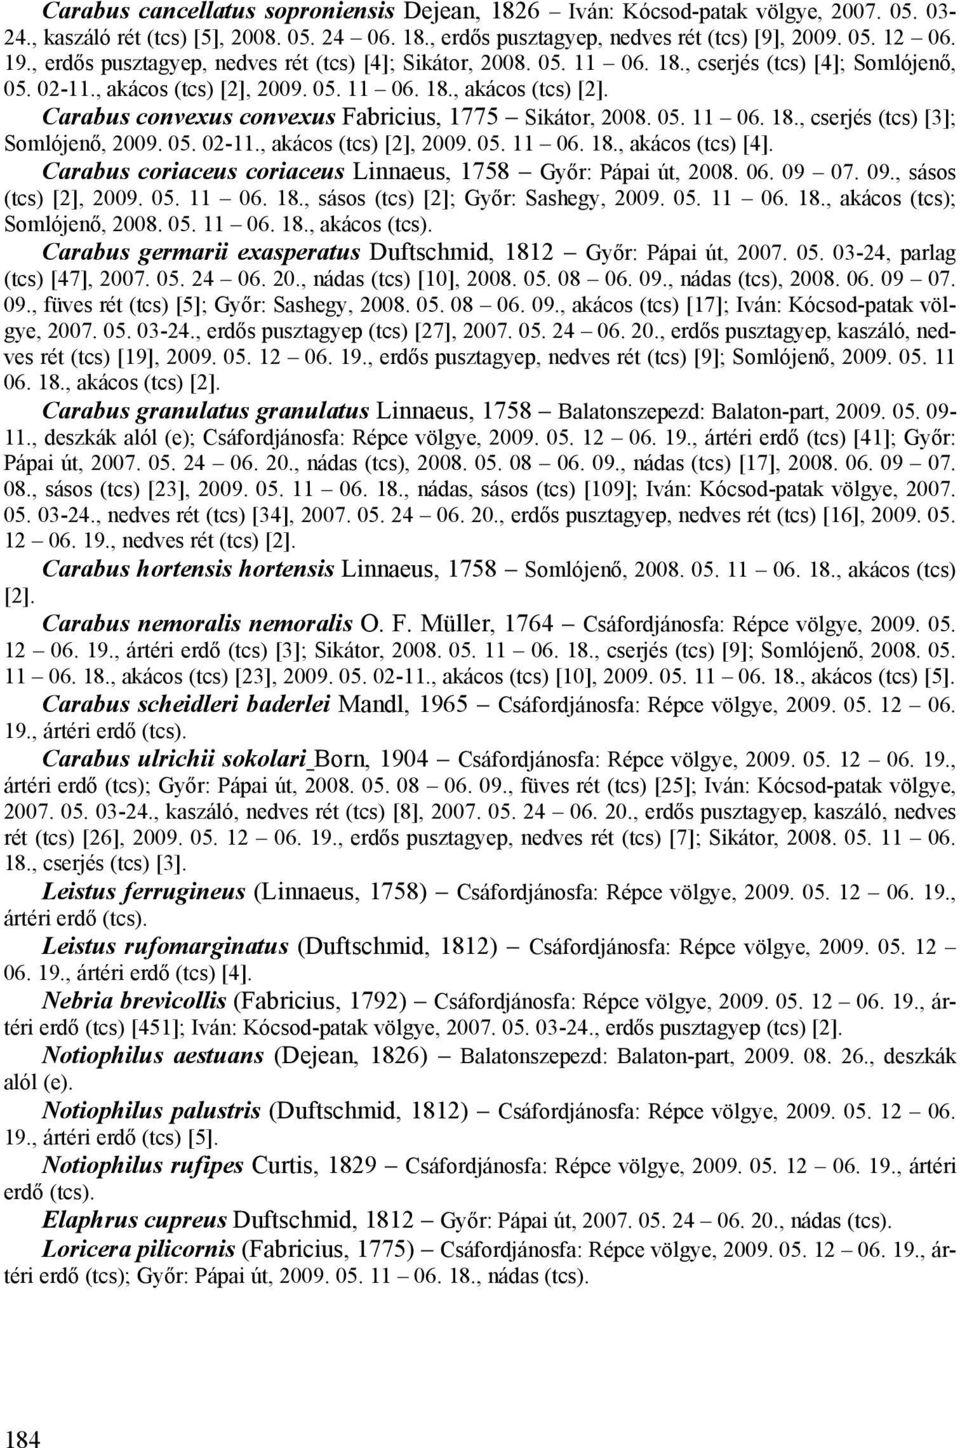 05. 11 06. 18., cserjés (tcs) [3]; Somlójenő, 2009. 05. 02-11., akácos (tcs) [2], 2009. 05. 11 06. 18., akácos (tcs) [4]. Carabus coriaceus coriaceus Linnaeus, 1758 Győr: Pápai út, 2008. 06. 09 07.